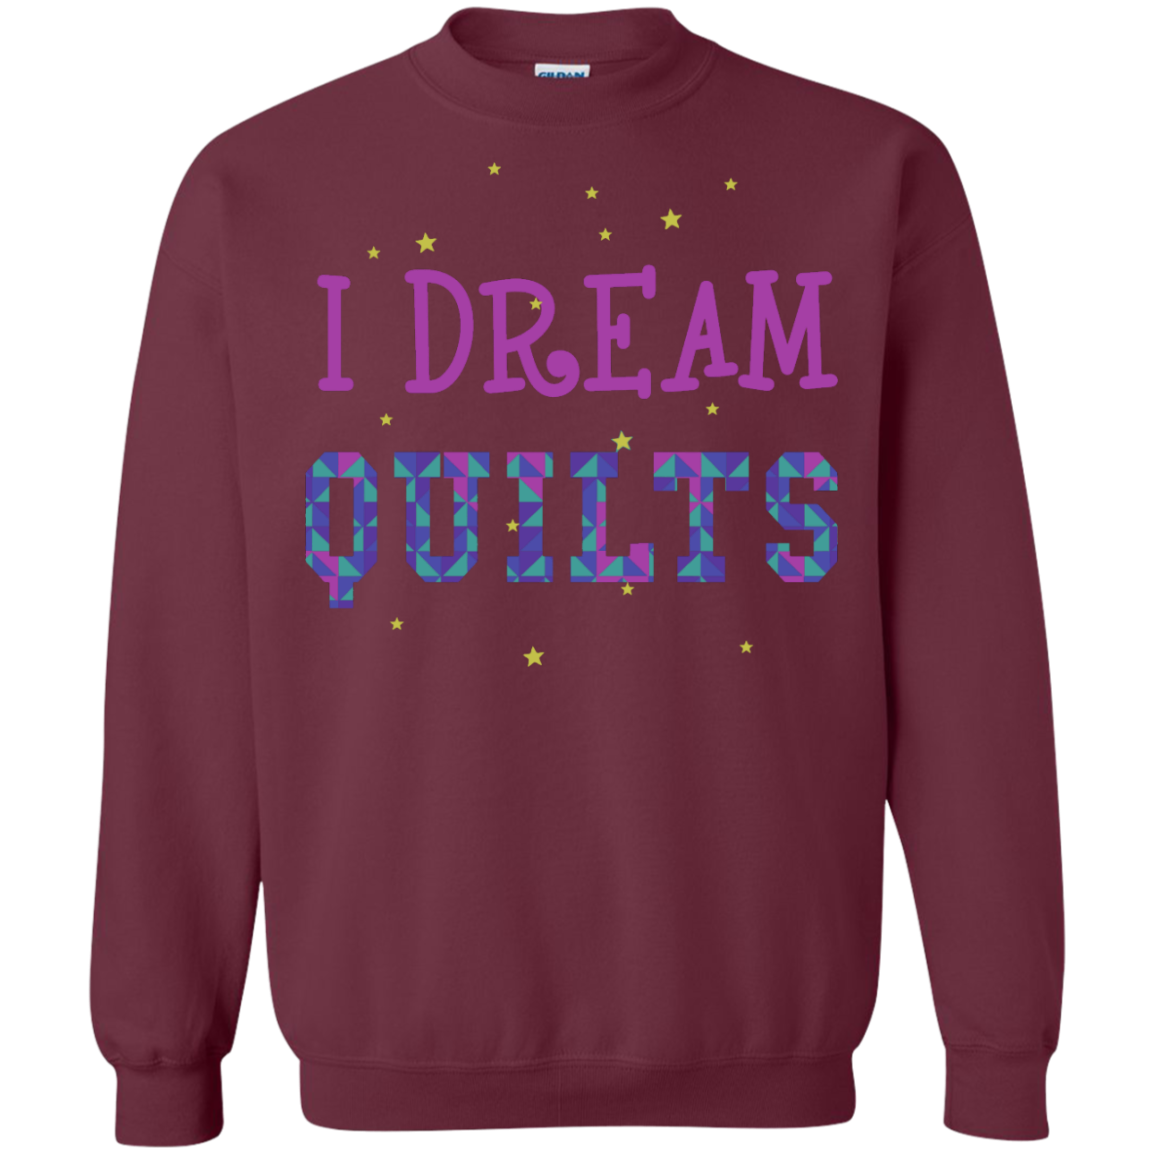 I Dream Quilts Crewneck Sweatshirt - Crafter4Life - 6